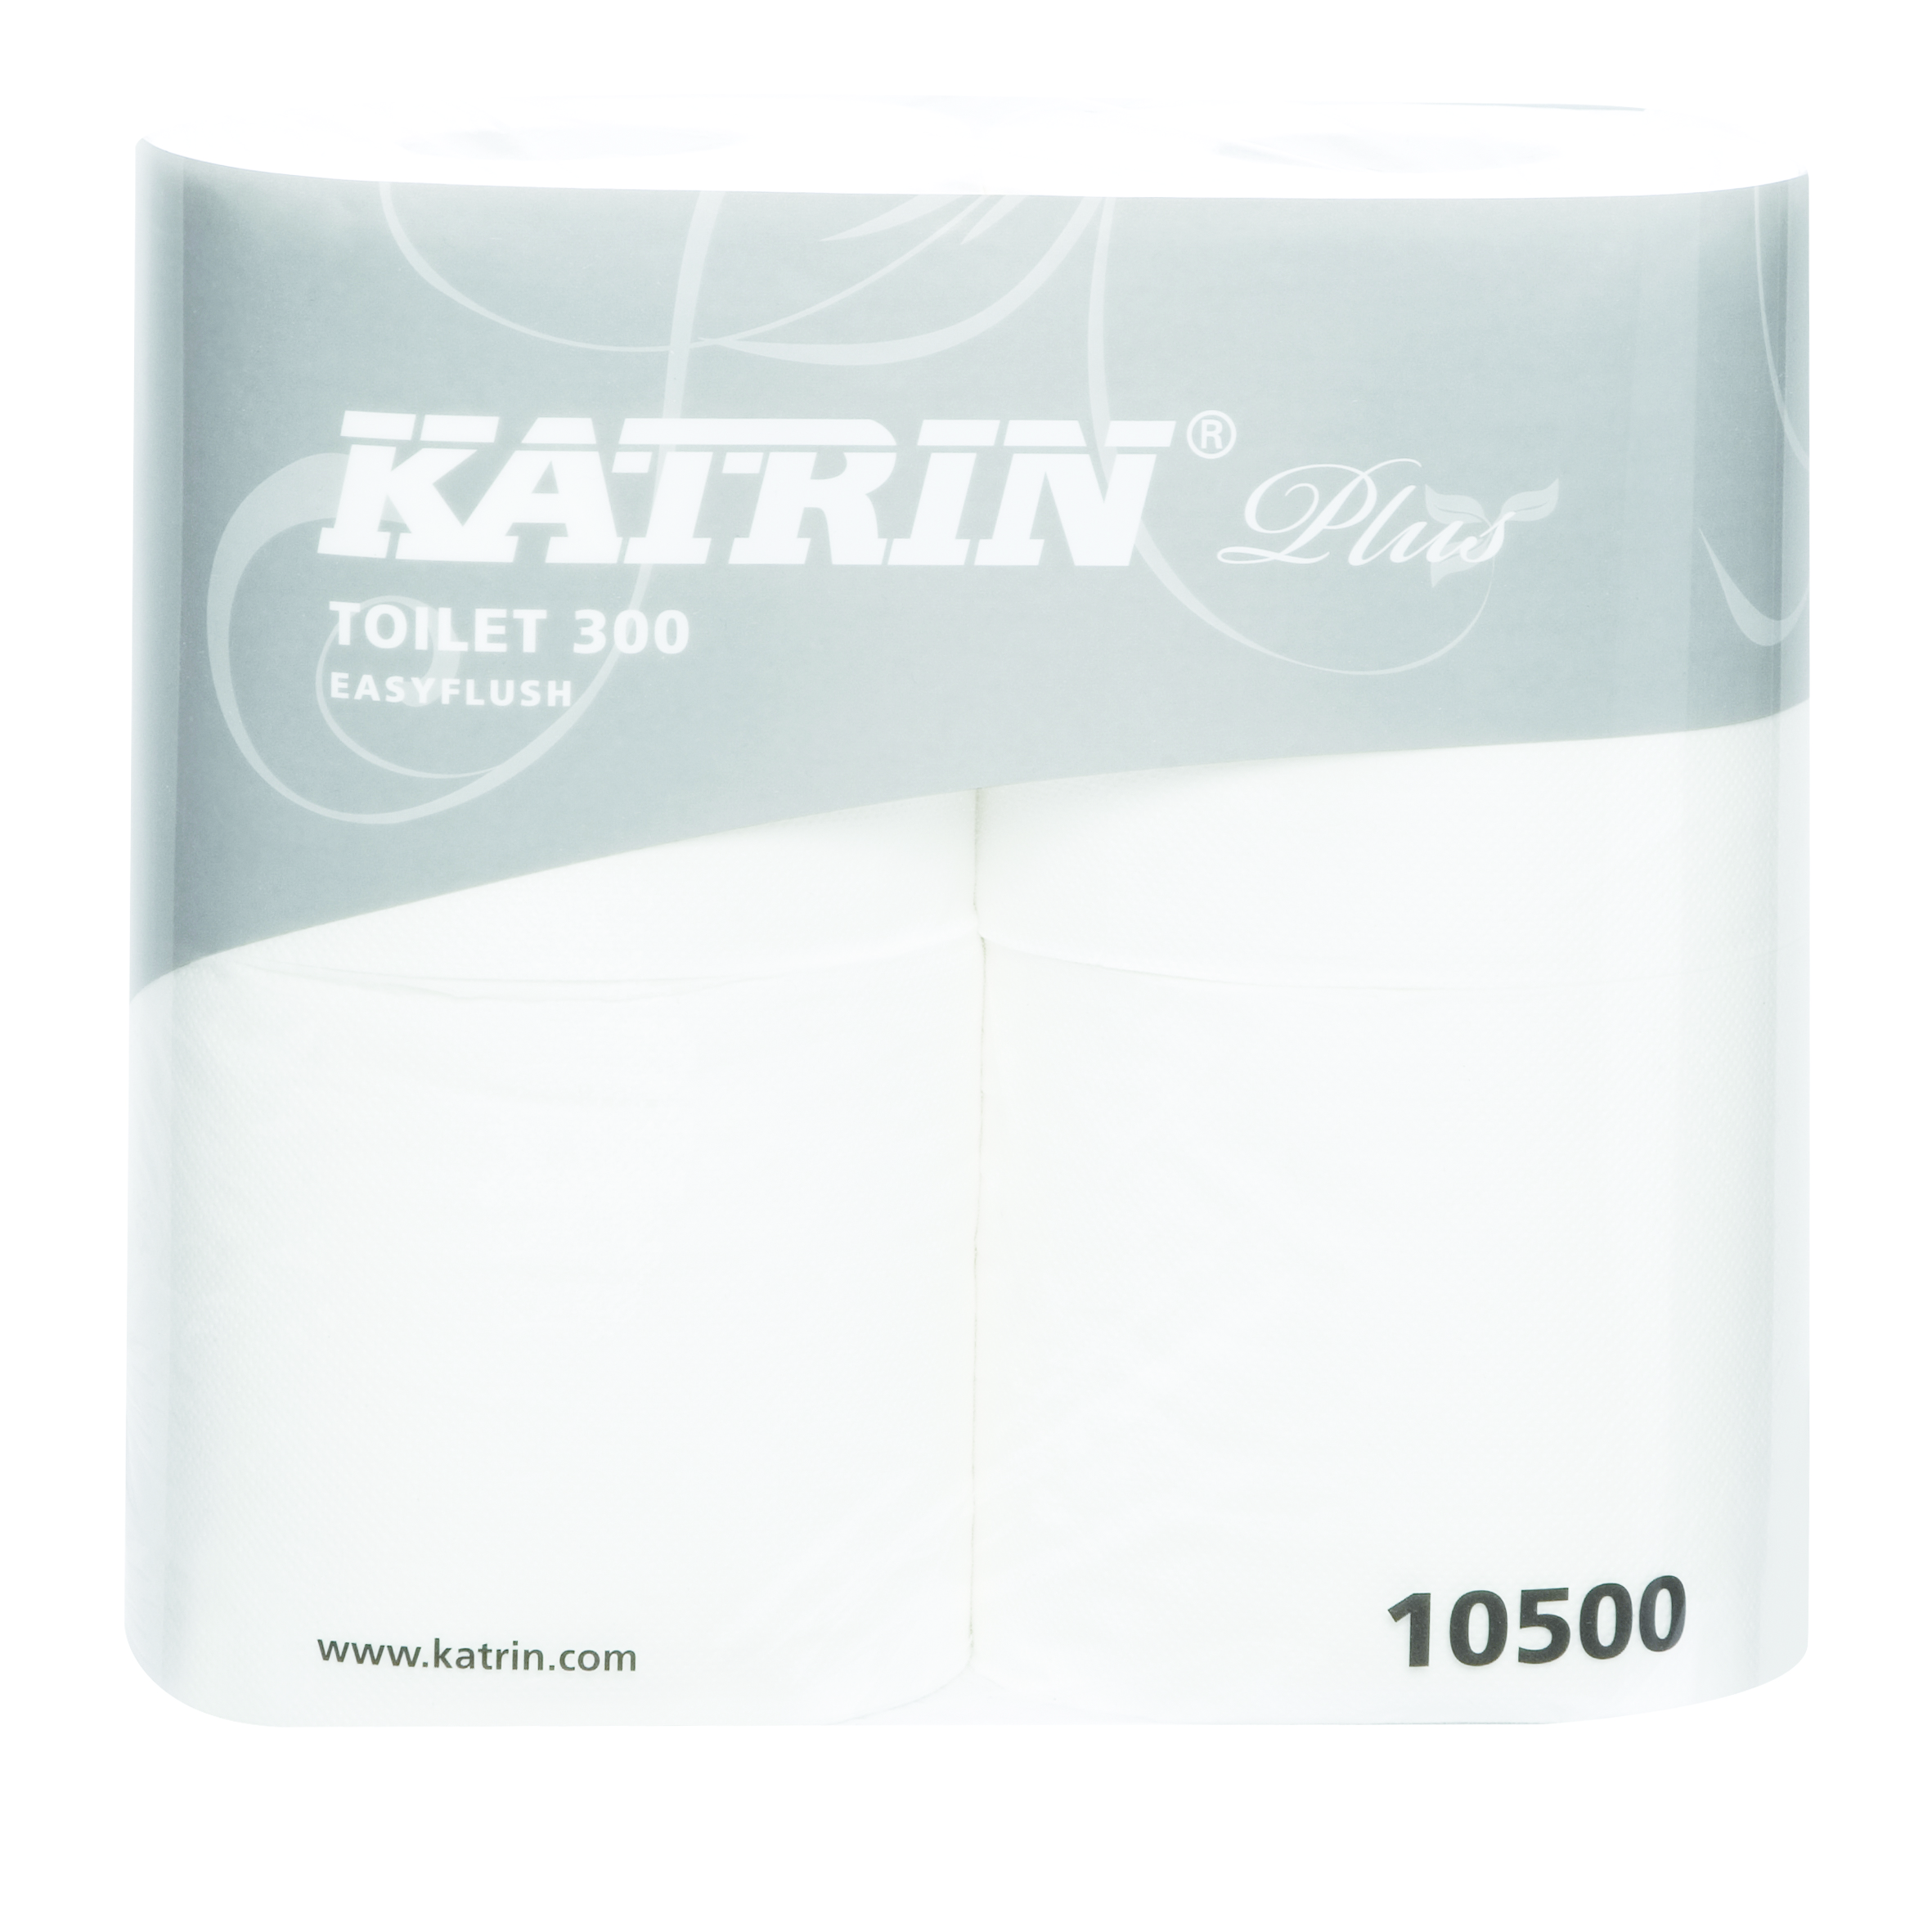 Katrin Plus Toilet Paper 300 sheet EASY FLUSH 2 ply 4 pack